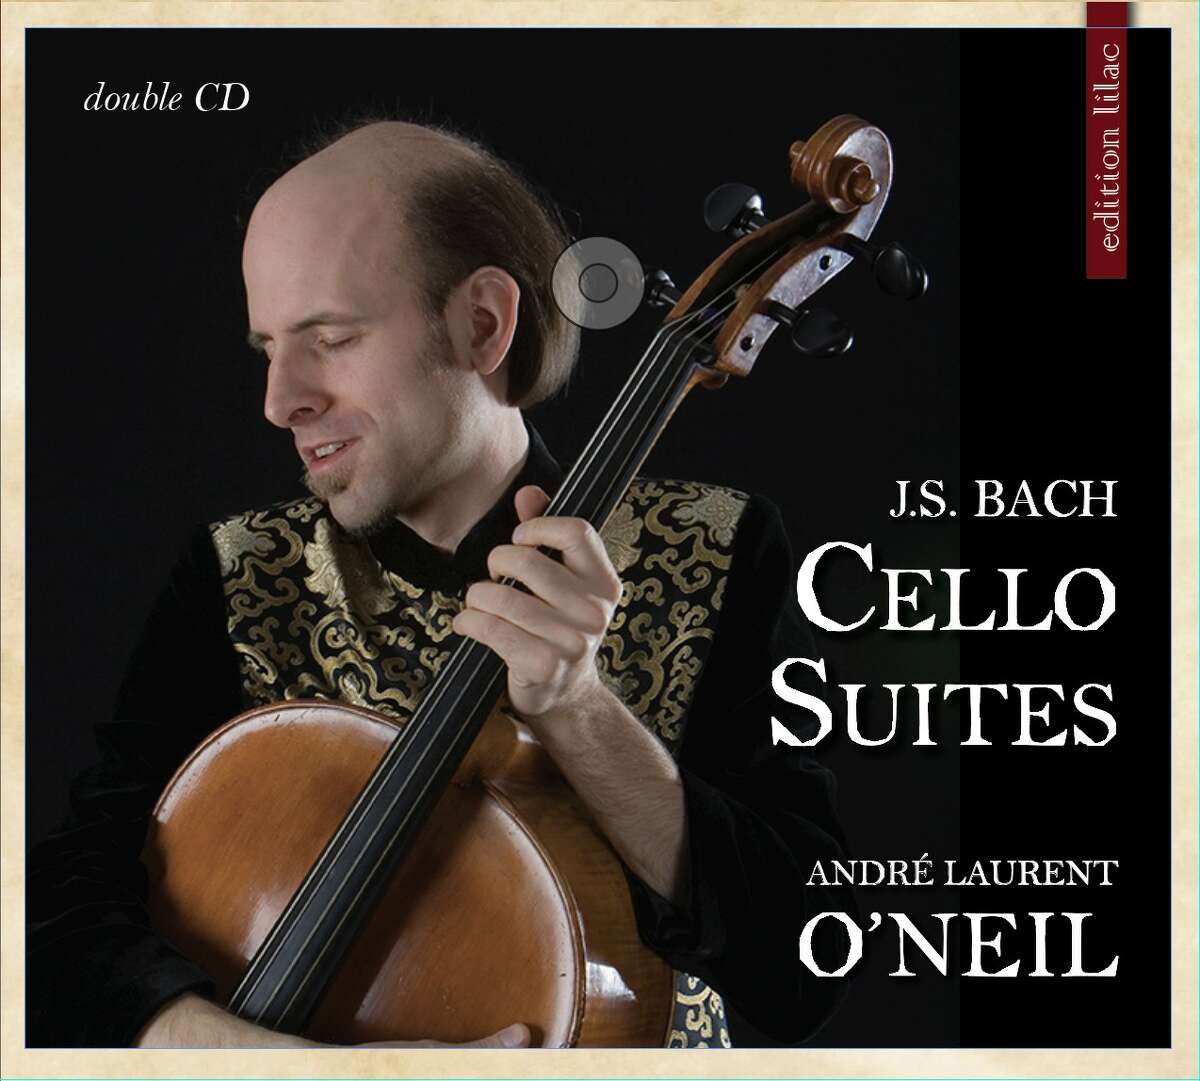 Cellist Andre Laurent O'Neil "J.S. Bach Cello Suites"